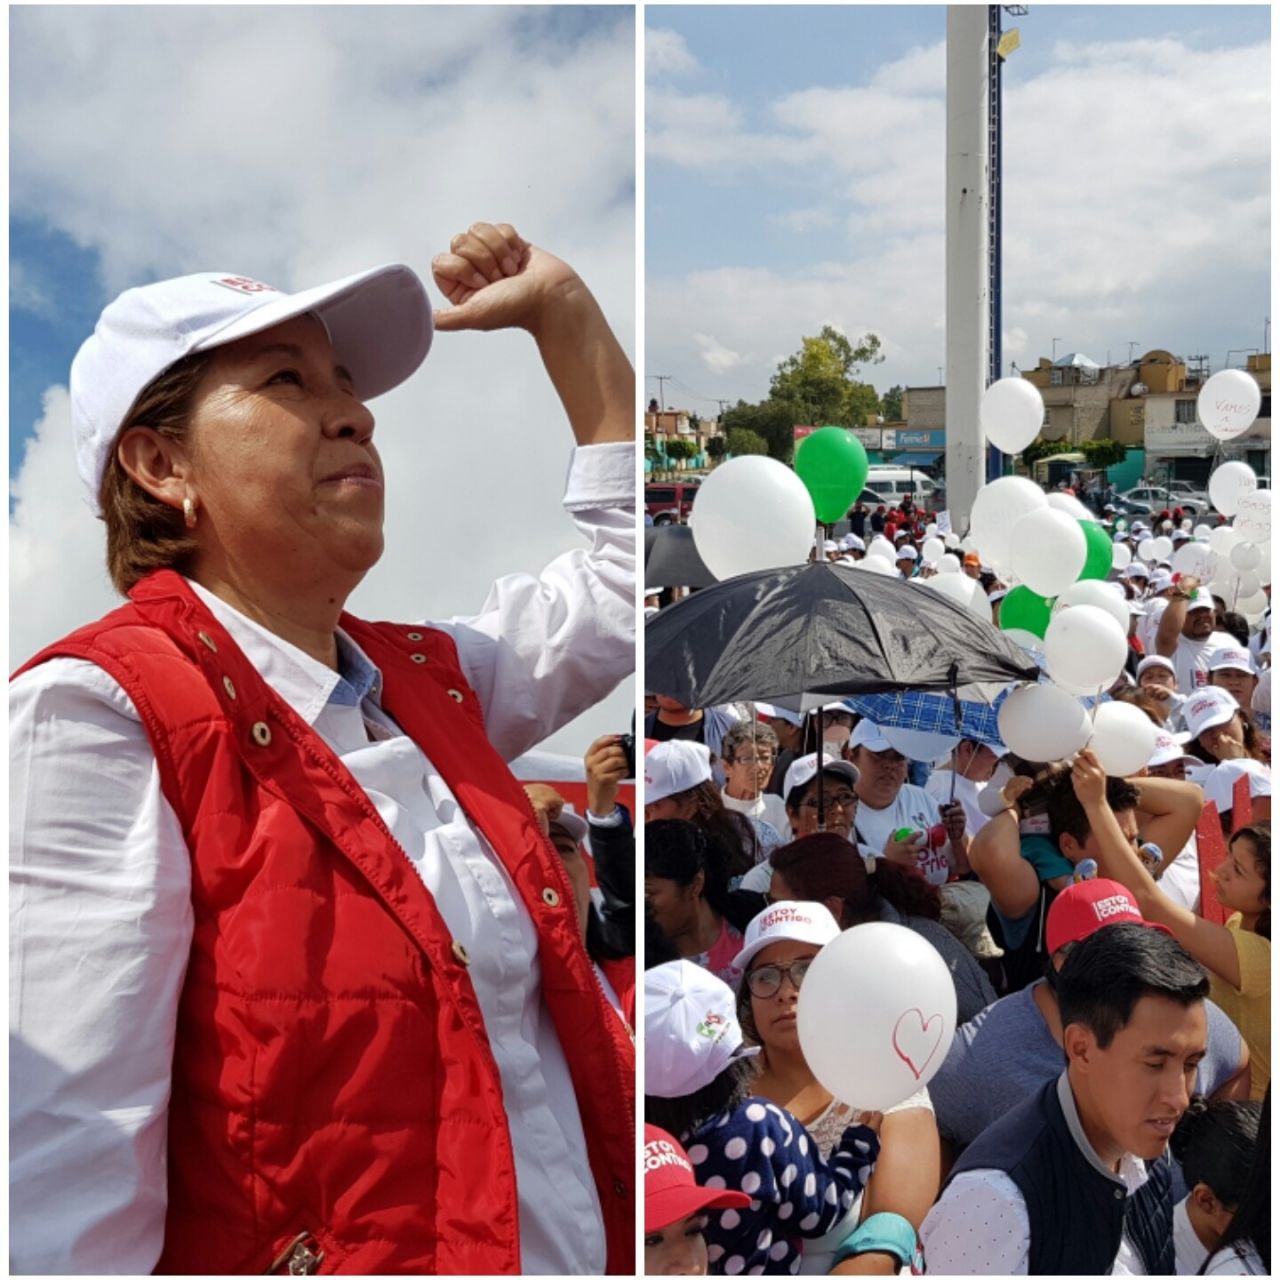 El partido salvador nada tiene que hacer en Ixtapaluca: Maricela Serrano Hernández